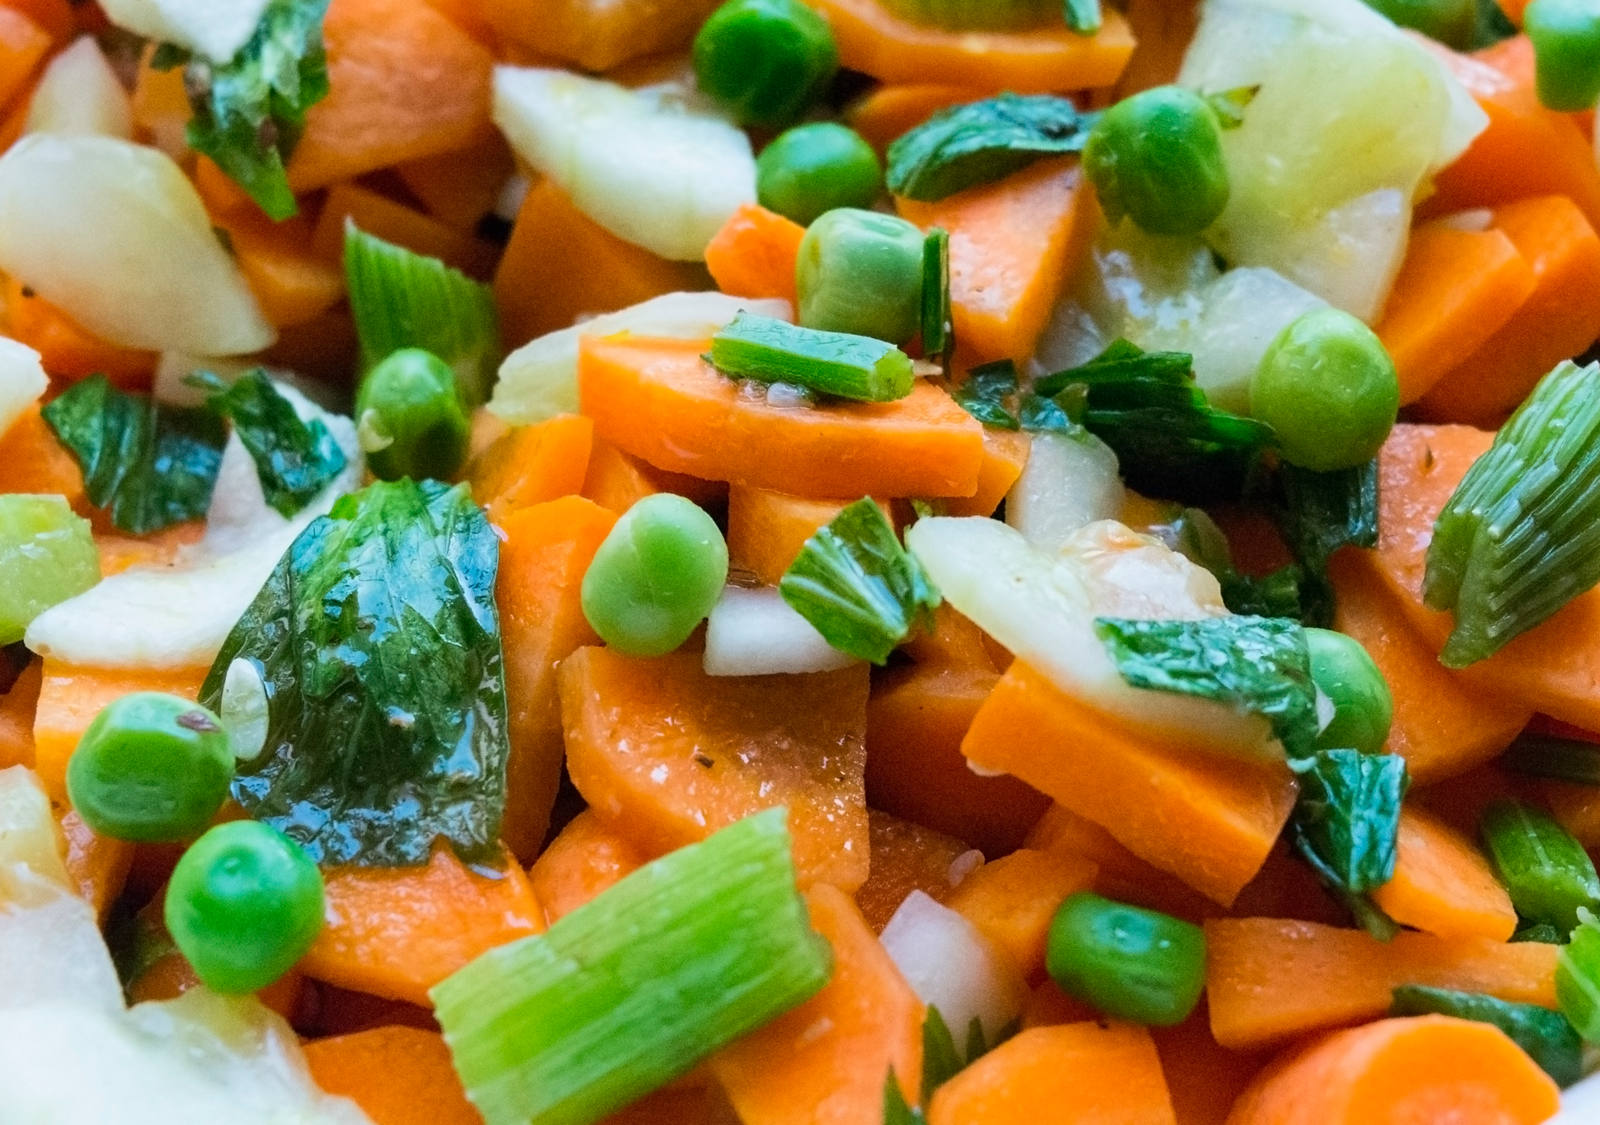  Soupe surgelée: soupe de légumes